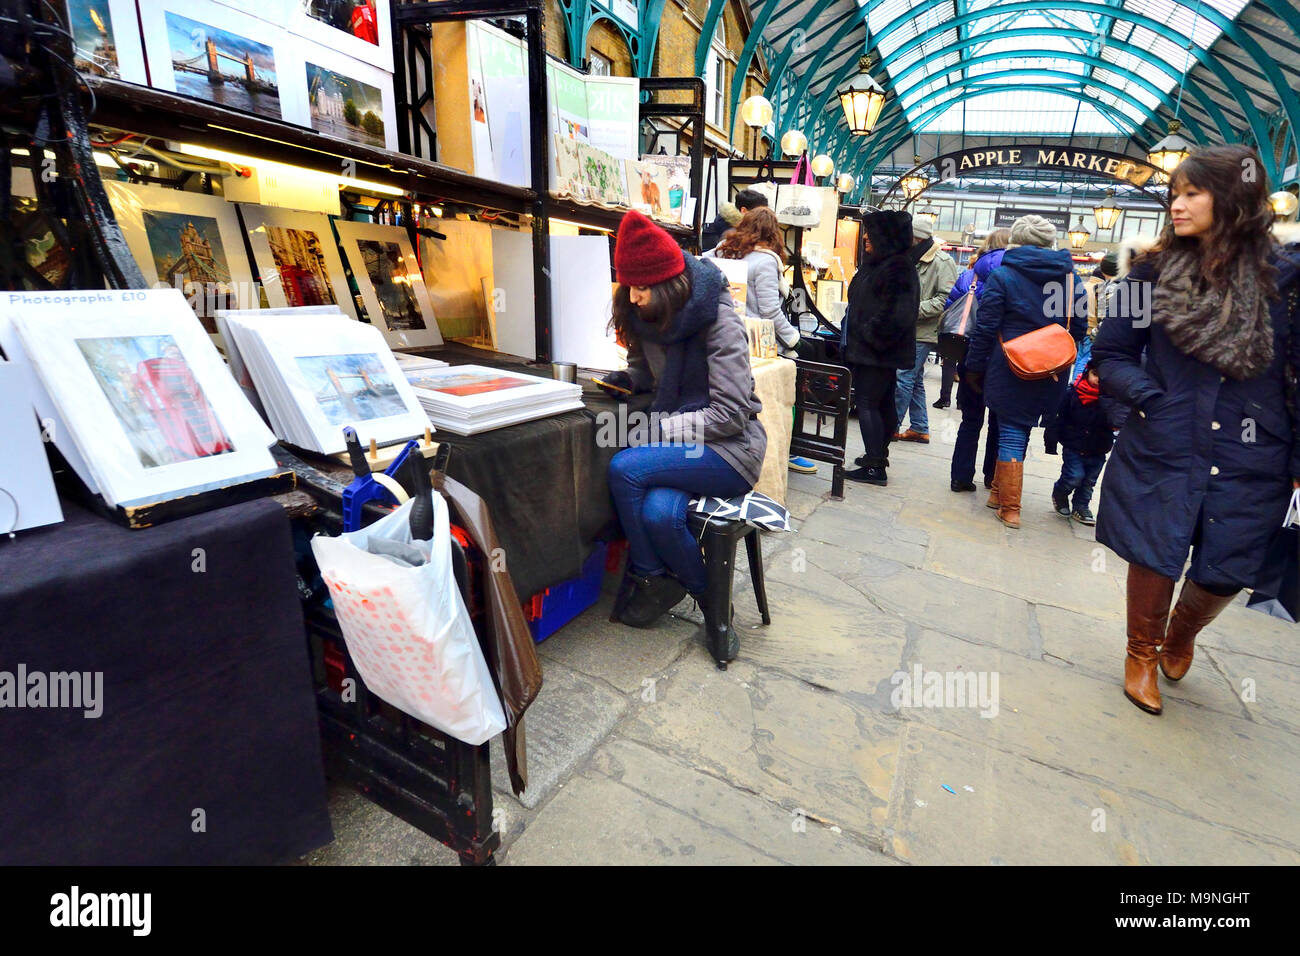 London, England, UK. Stallholder in Covent Garden market, on her mobile phone Stock Photo